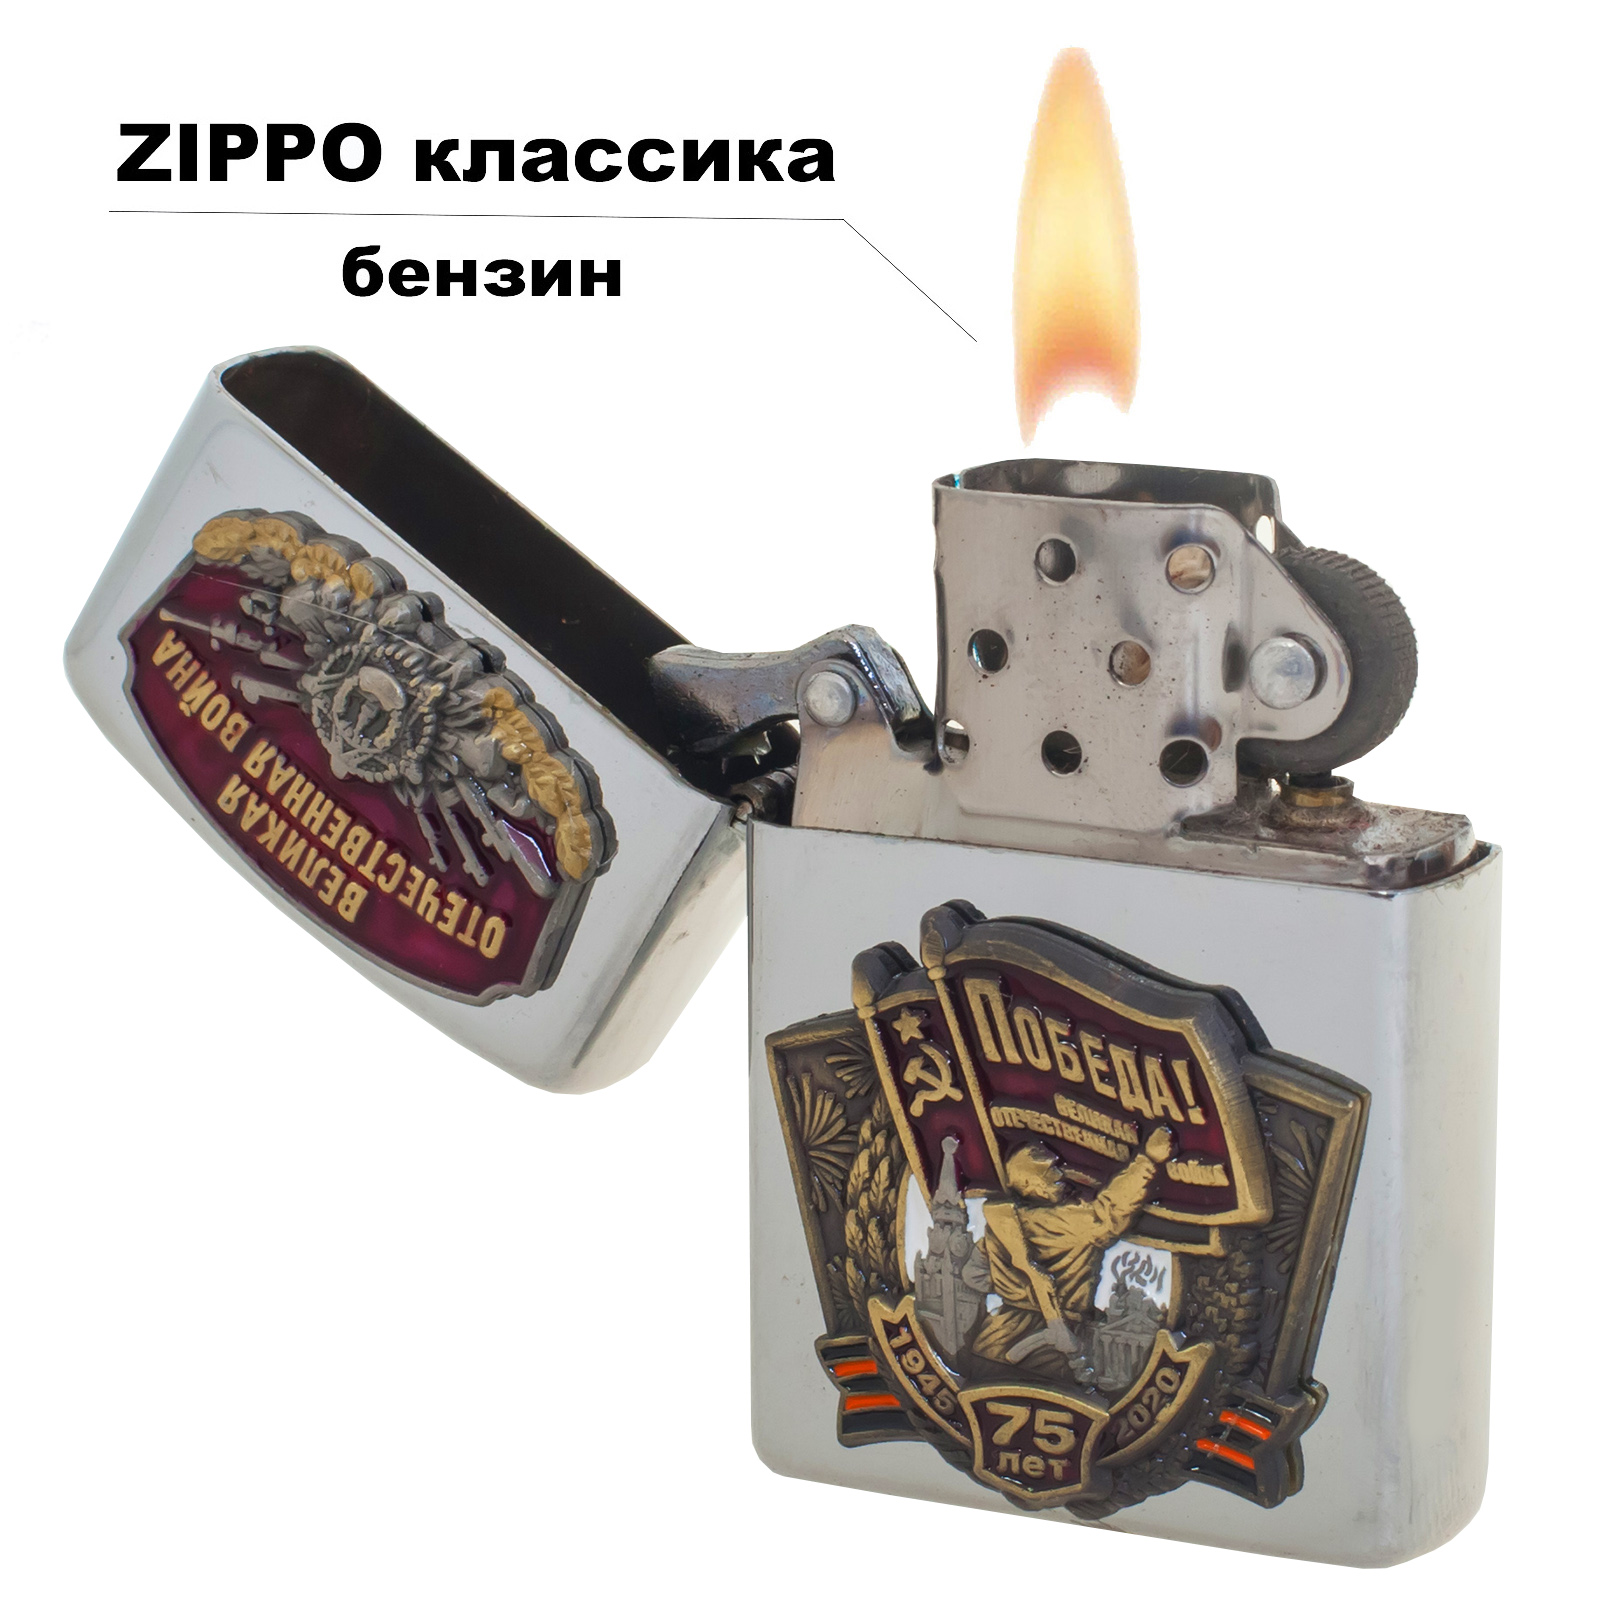 Коллекционная бензиновая зажигалка "75 лет Победы" от Военпро